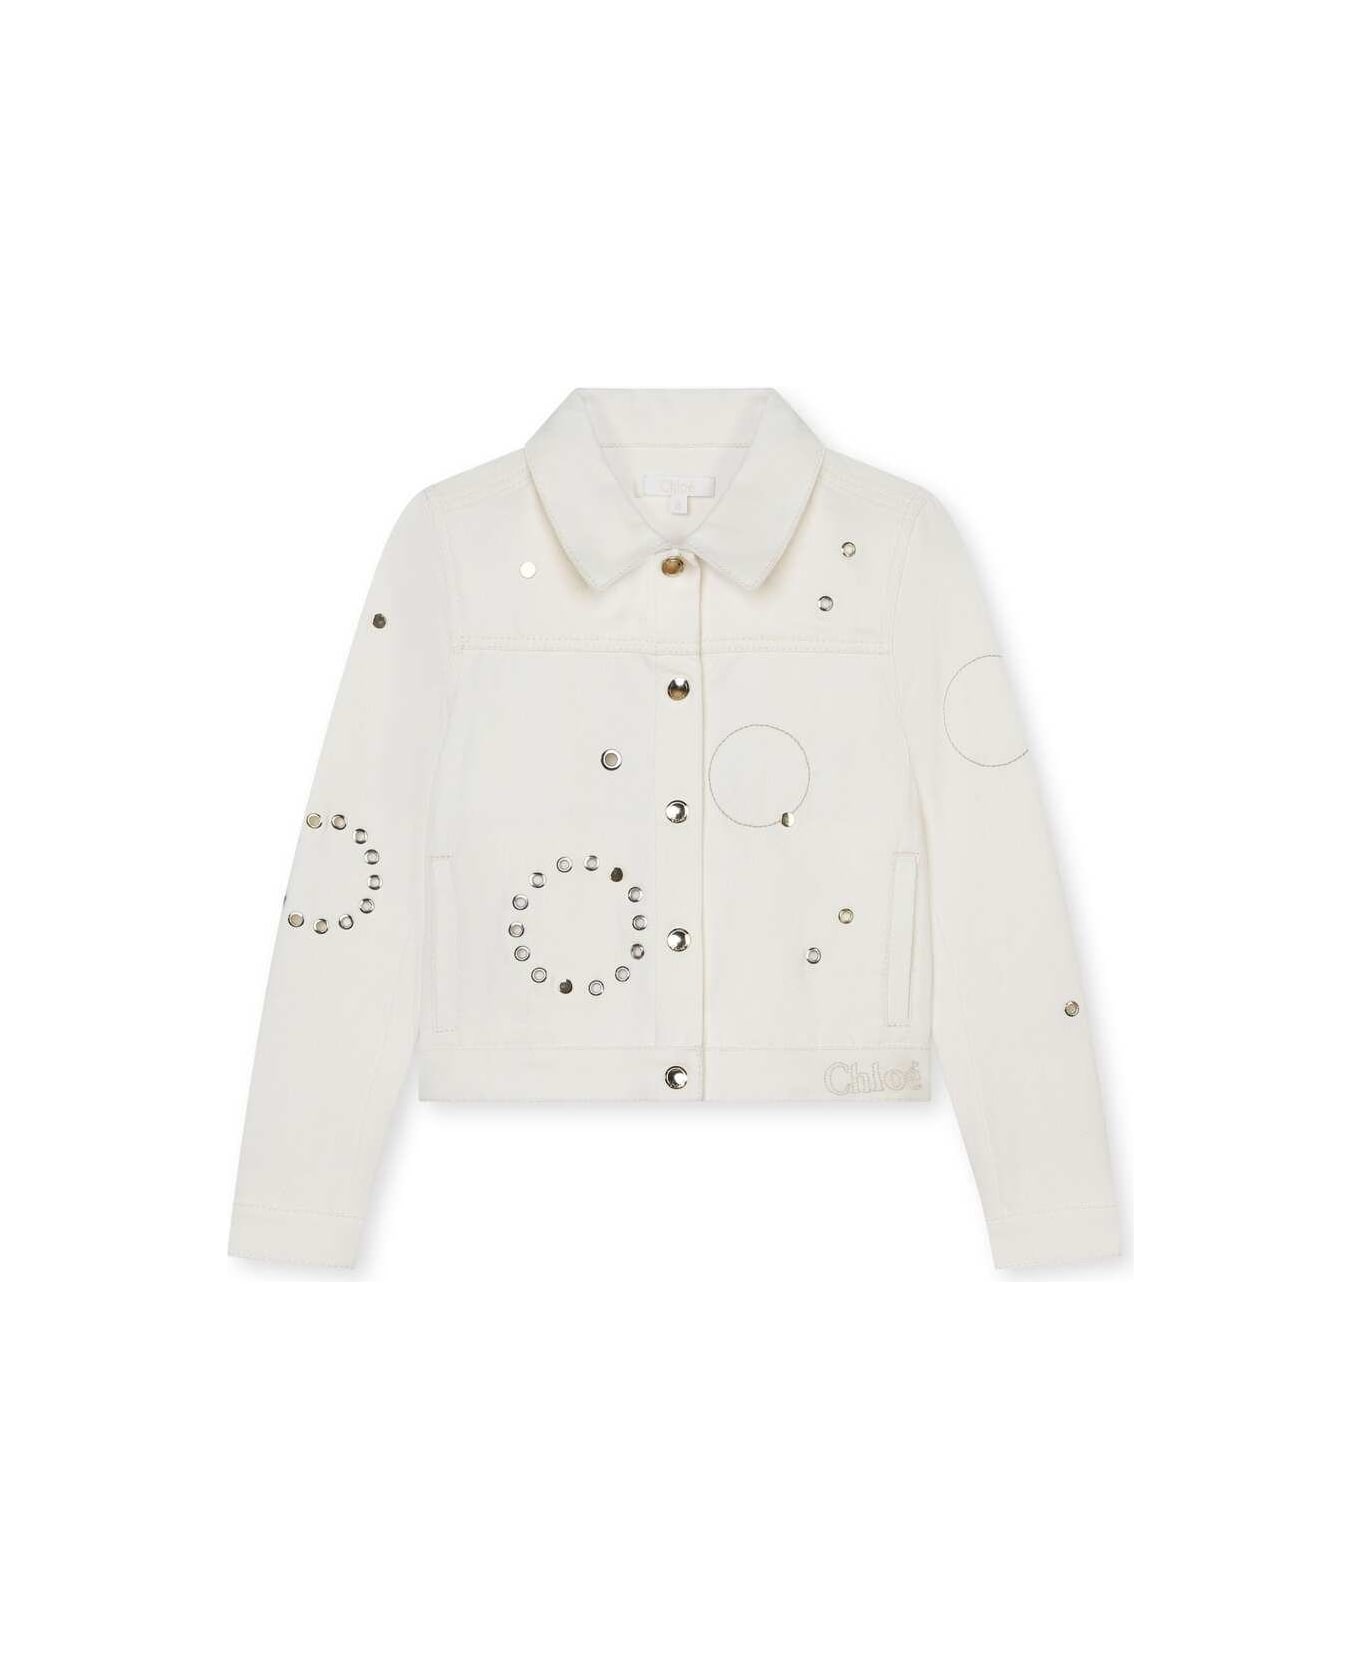 Chloé Ivory Denim Jacket With Studs - White